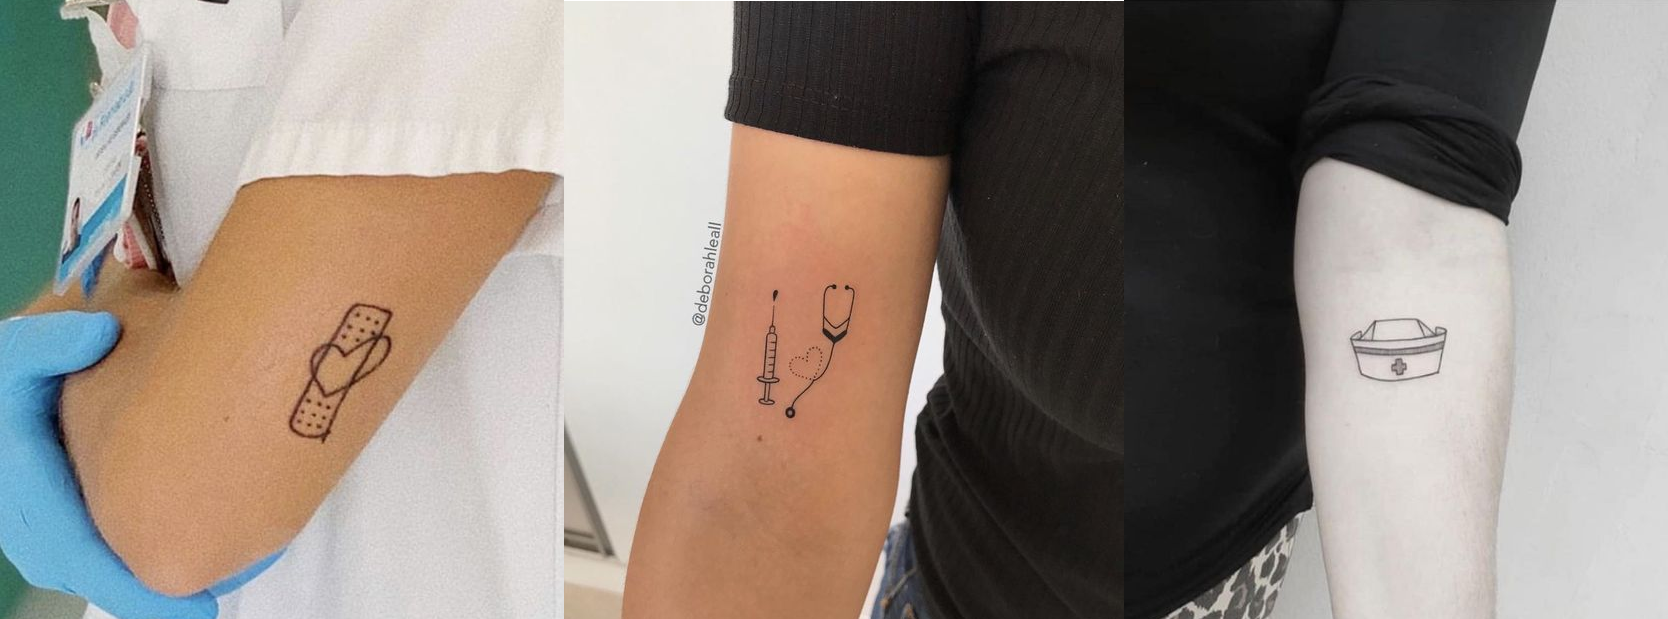 Tatuagem na mão: 5 dicas e cuidados – Engenheira Gabi